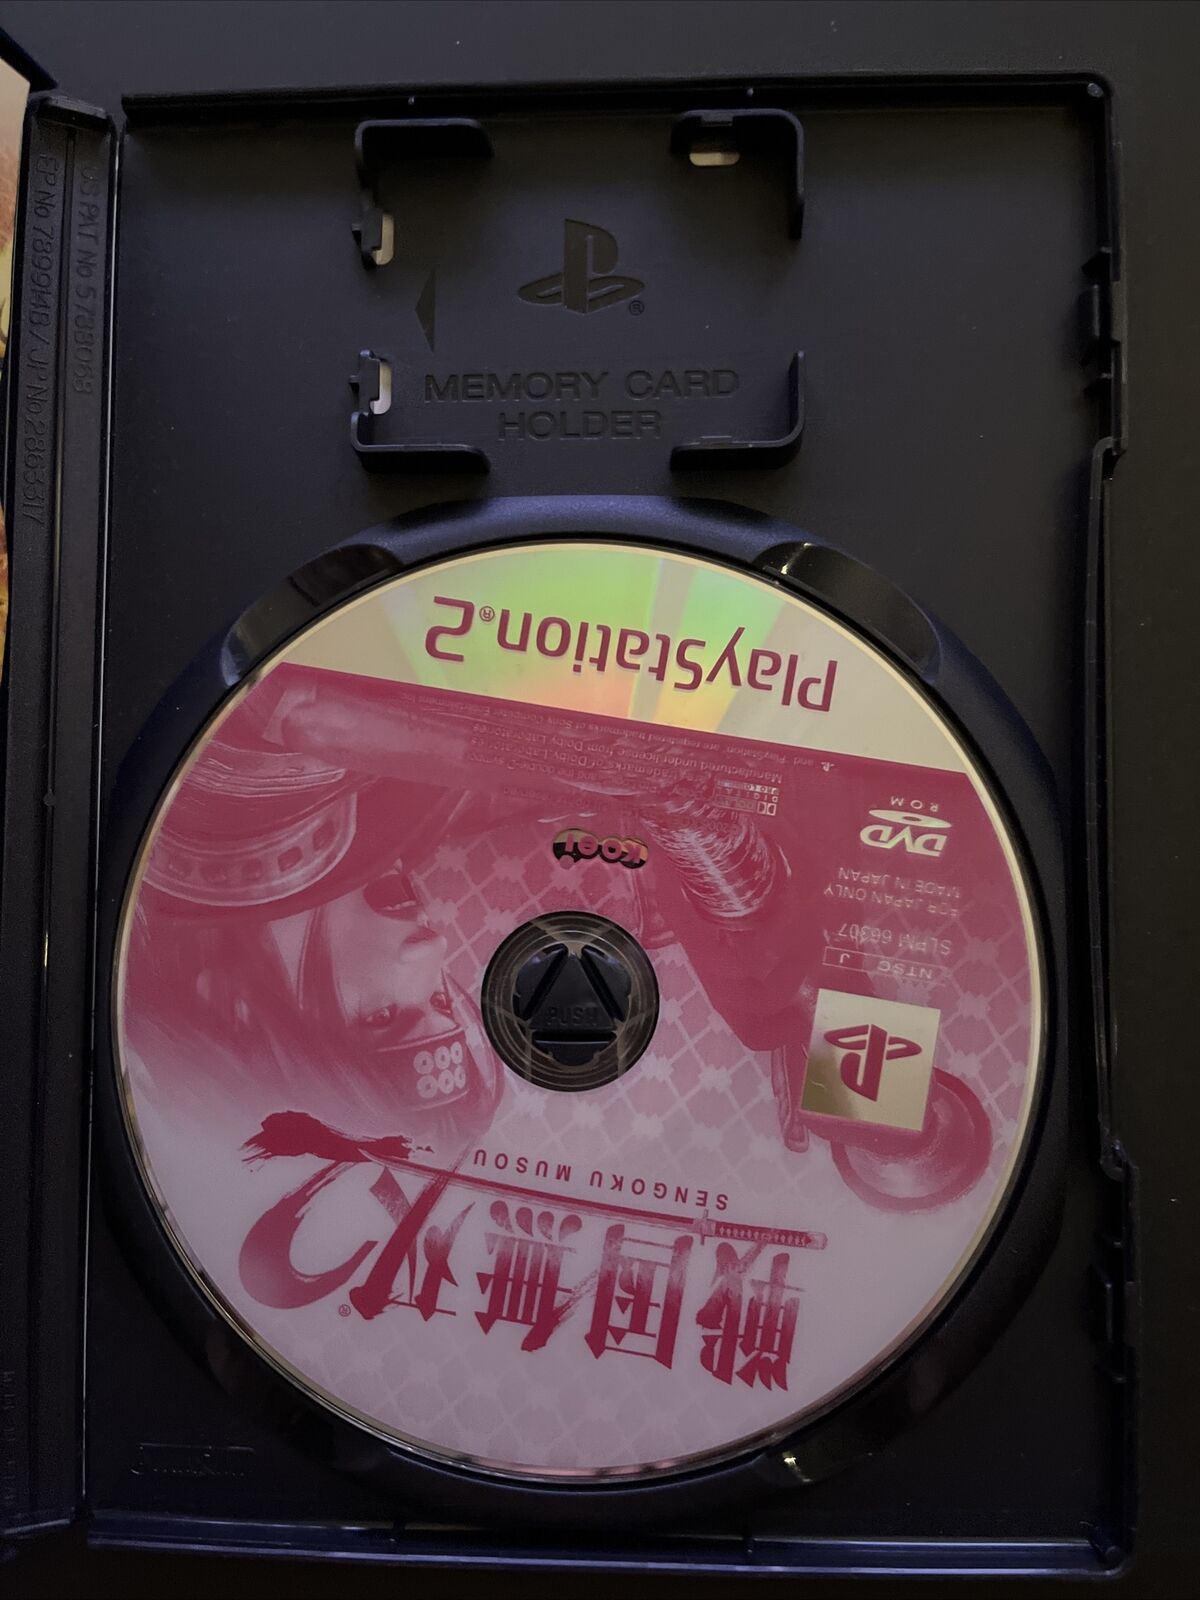 Sengoku Musou / Samurai Warriors 1 & 2 PlayStation PS2 NTSC-J Japan Game